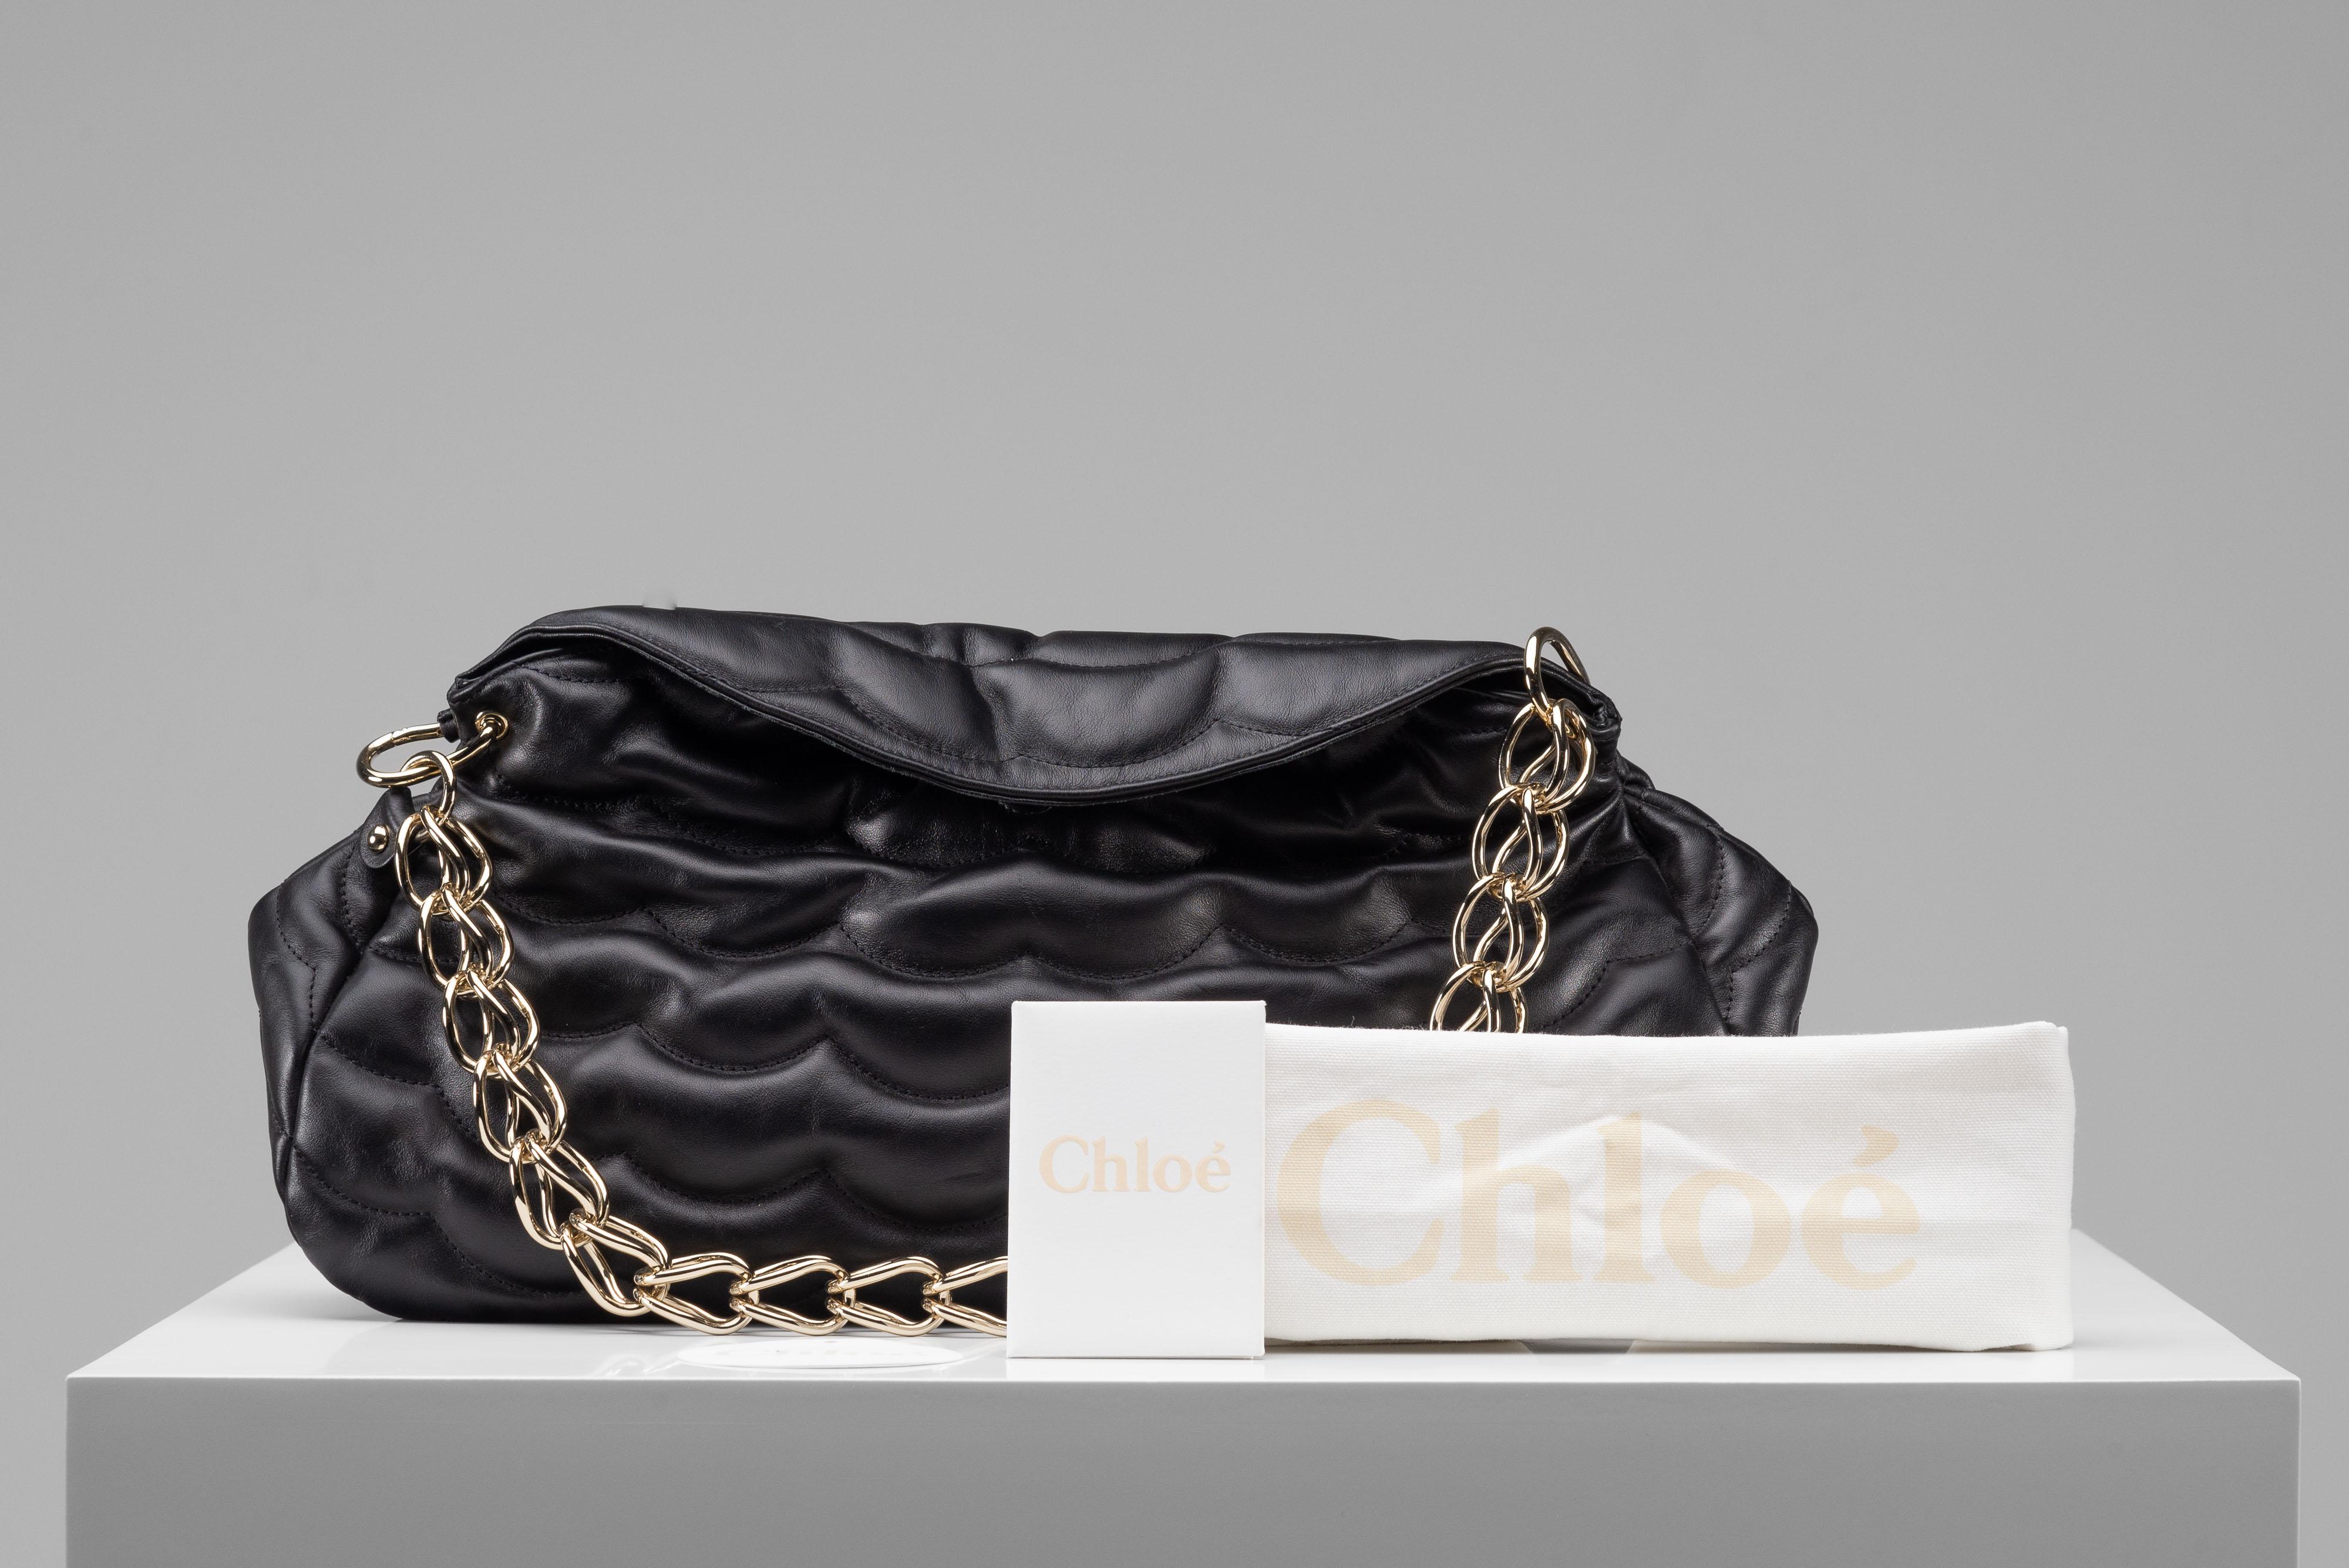 Aus der Kollektion von SAVINETI bieten wir diese Tasche Chloe Juana Black an:
-    Marke: Chloe 
-    Modell: Juana Schwarz Gestepptes Leder
-    Farbe: Schwarz
-    Zustand: Sehr guter Zustand
-    MATERIALIEN: Leder, goldfarbene Kette
-    Extras: